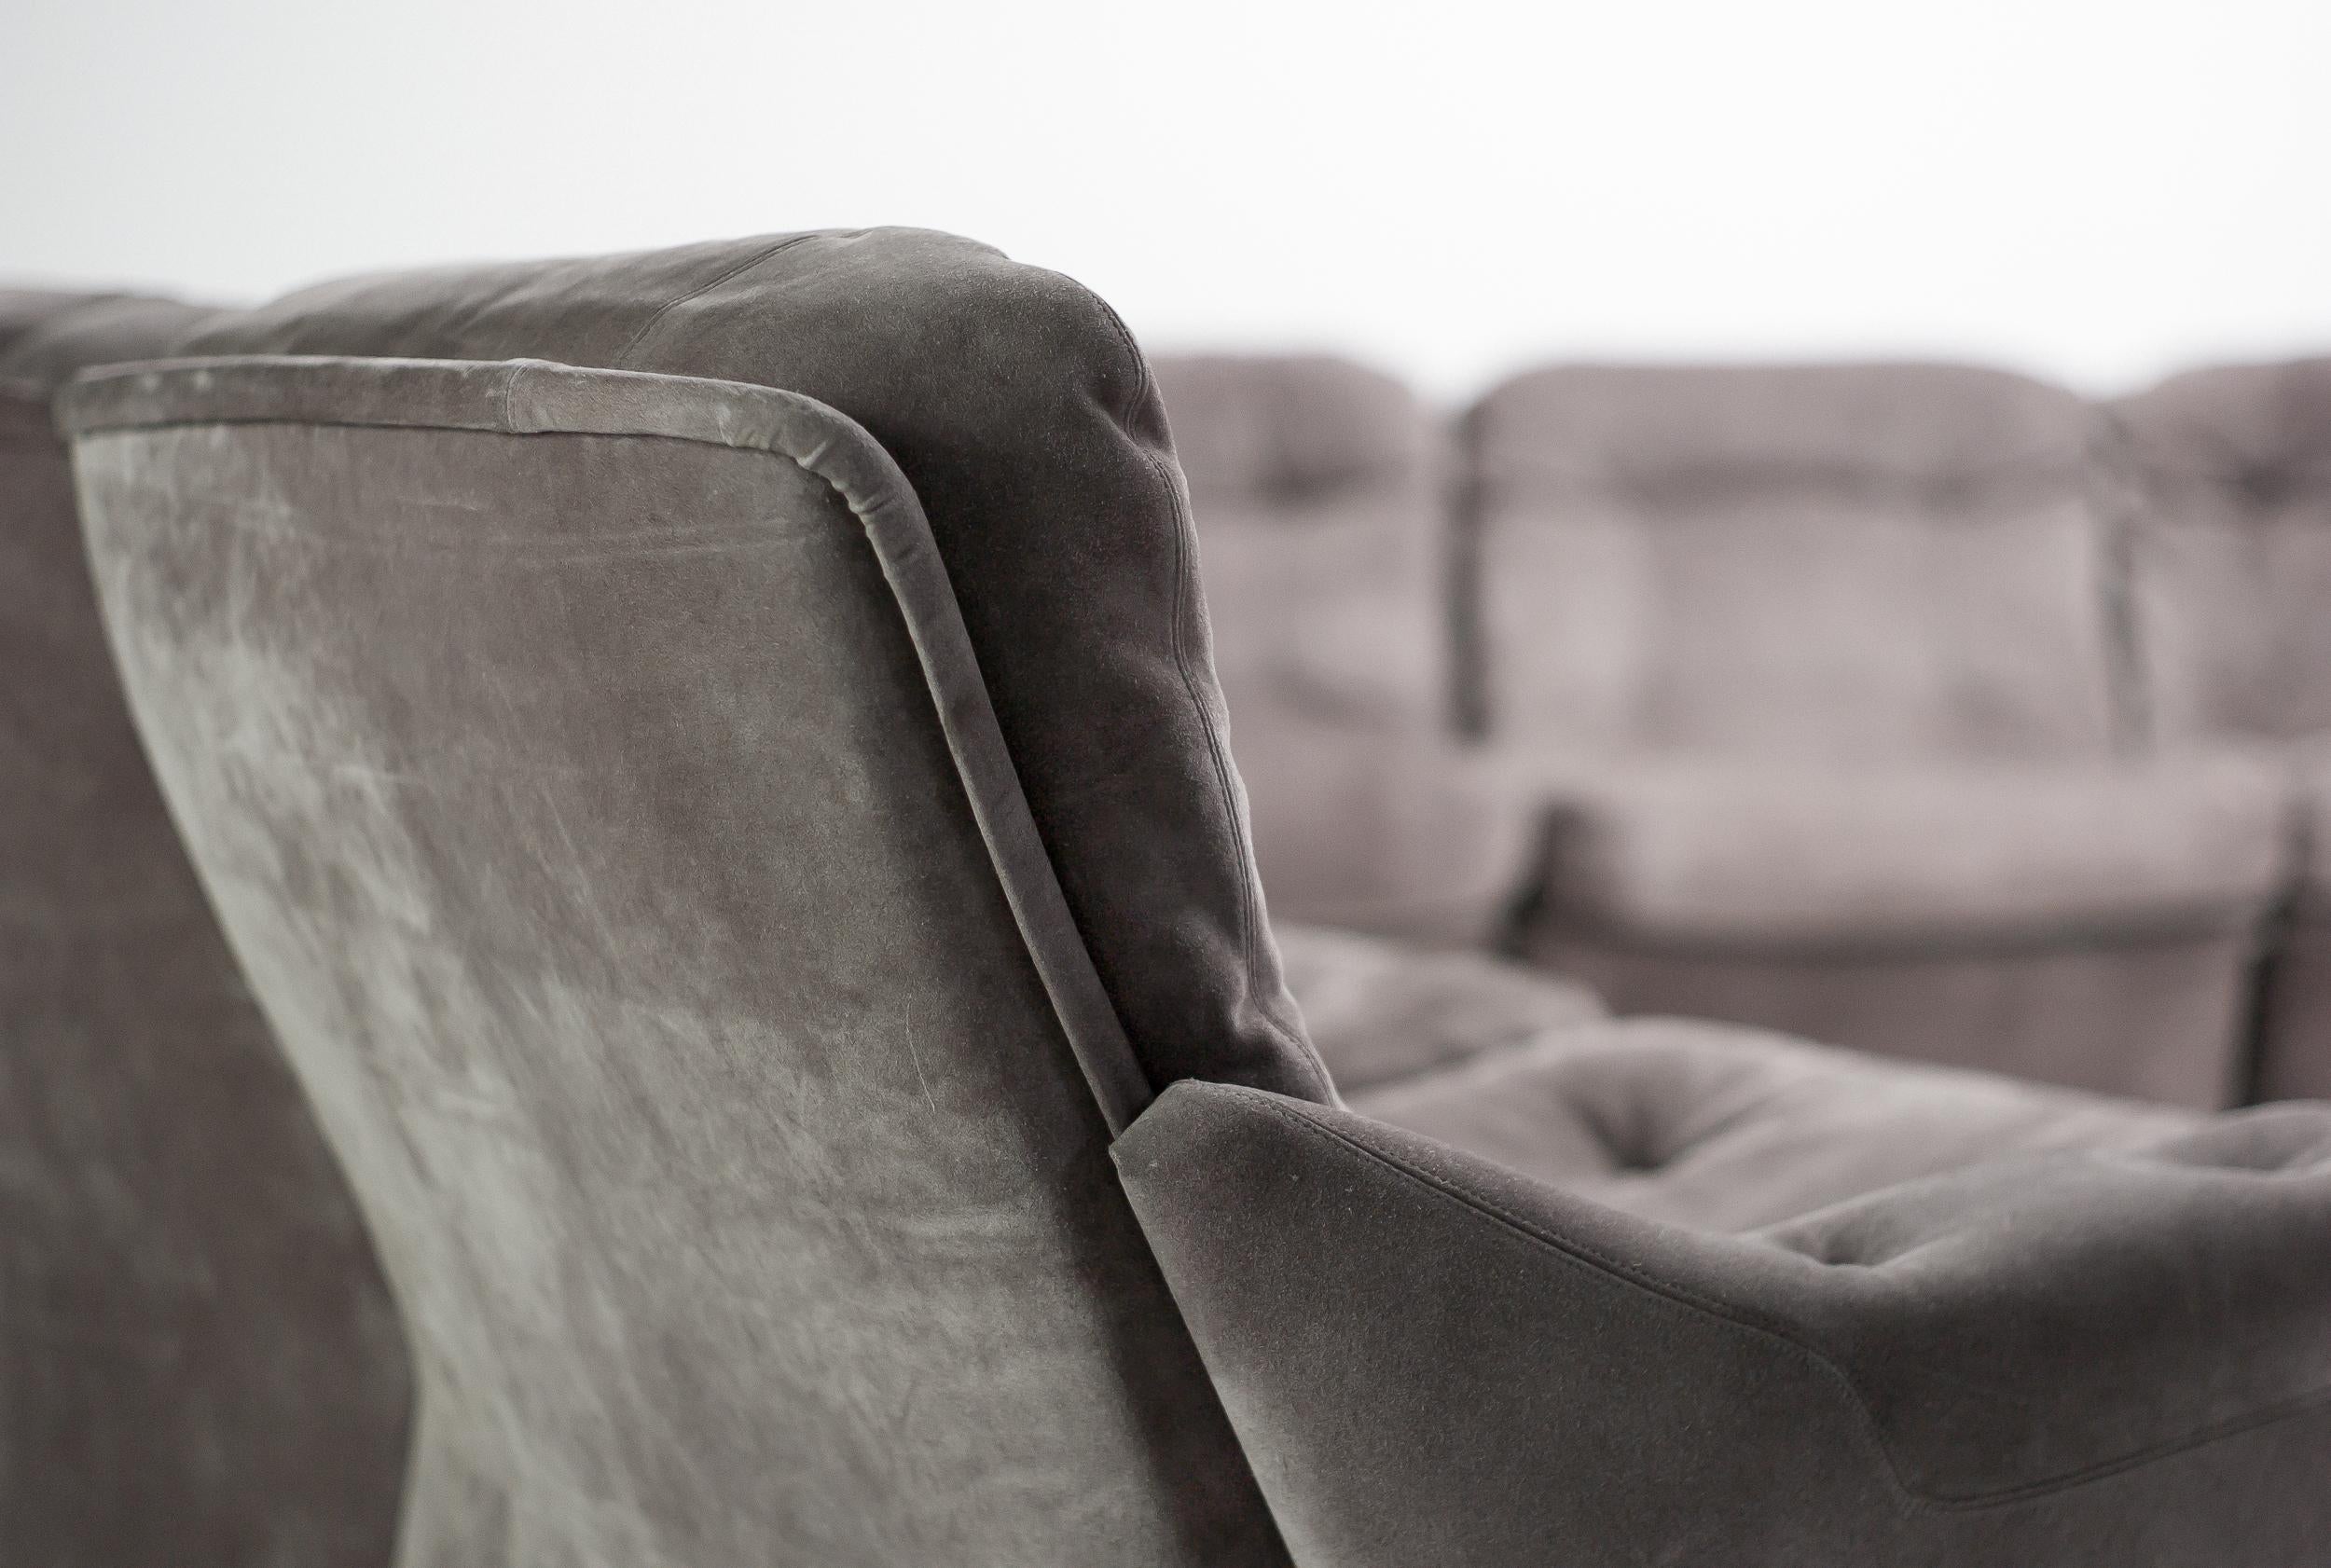 Sehr bequemes, modulares Sofa der Serie 'Orchidée', entworfen von Michel Cadestin für Airborne International.
Das Sofa besteht aus Fiberglas mit Wildlederbezug und getufteten Kissen und ist sehr leicht. Die Rollen an der Rückseite sorgen für